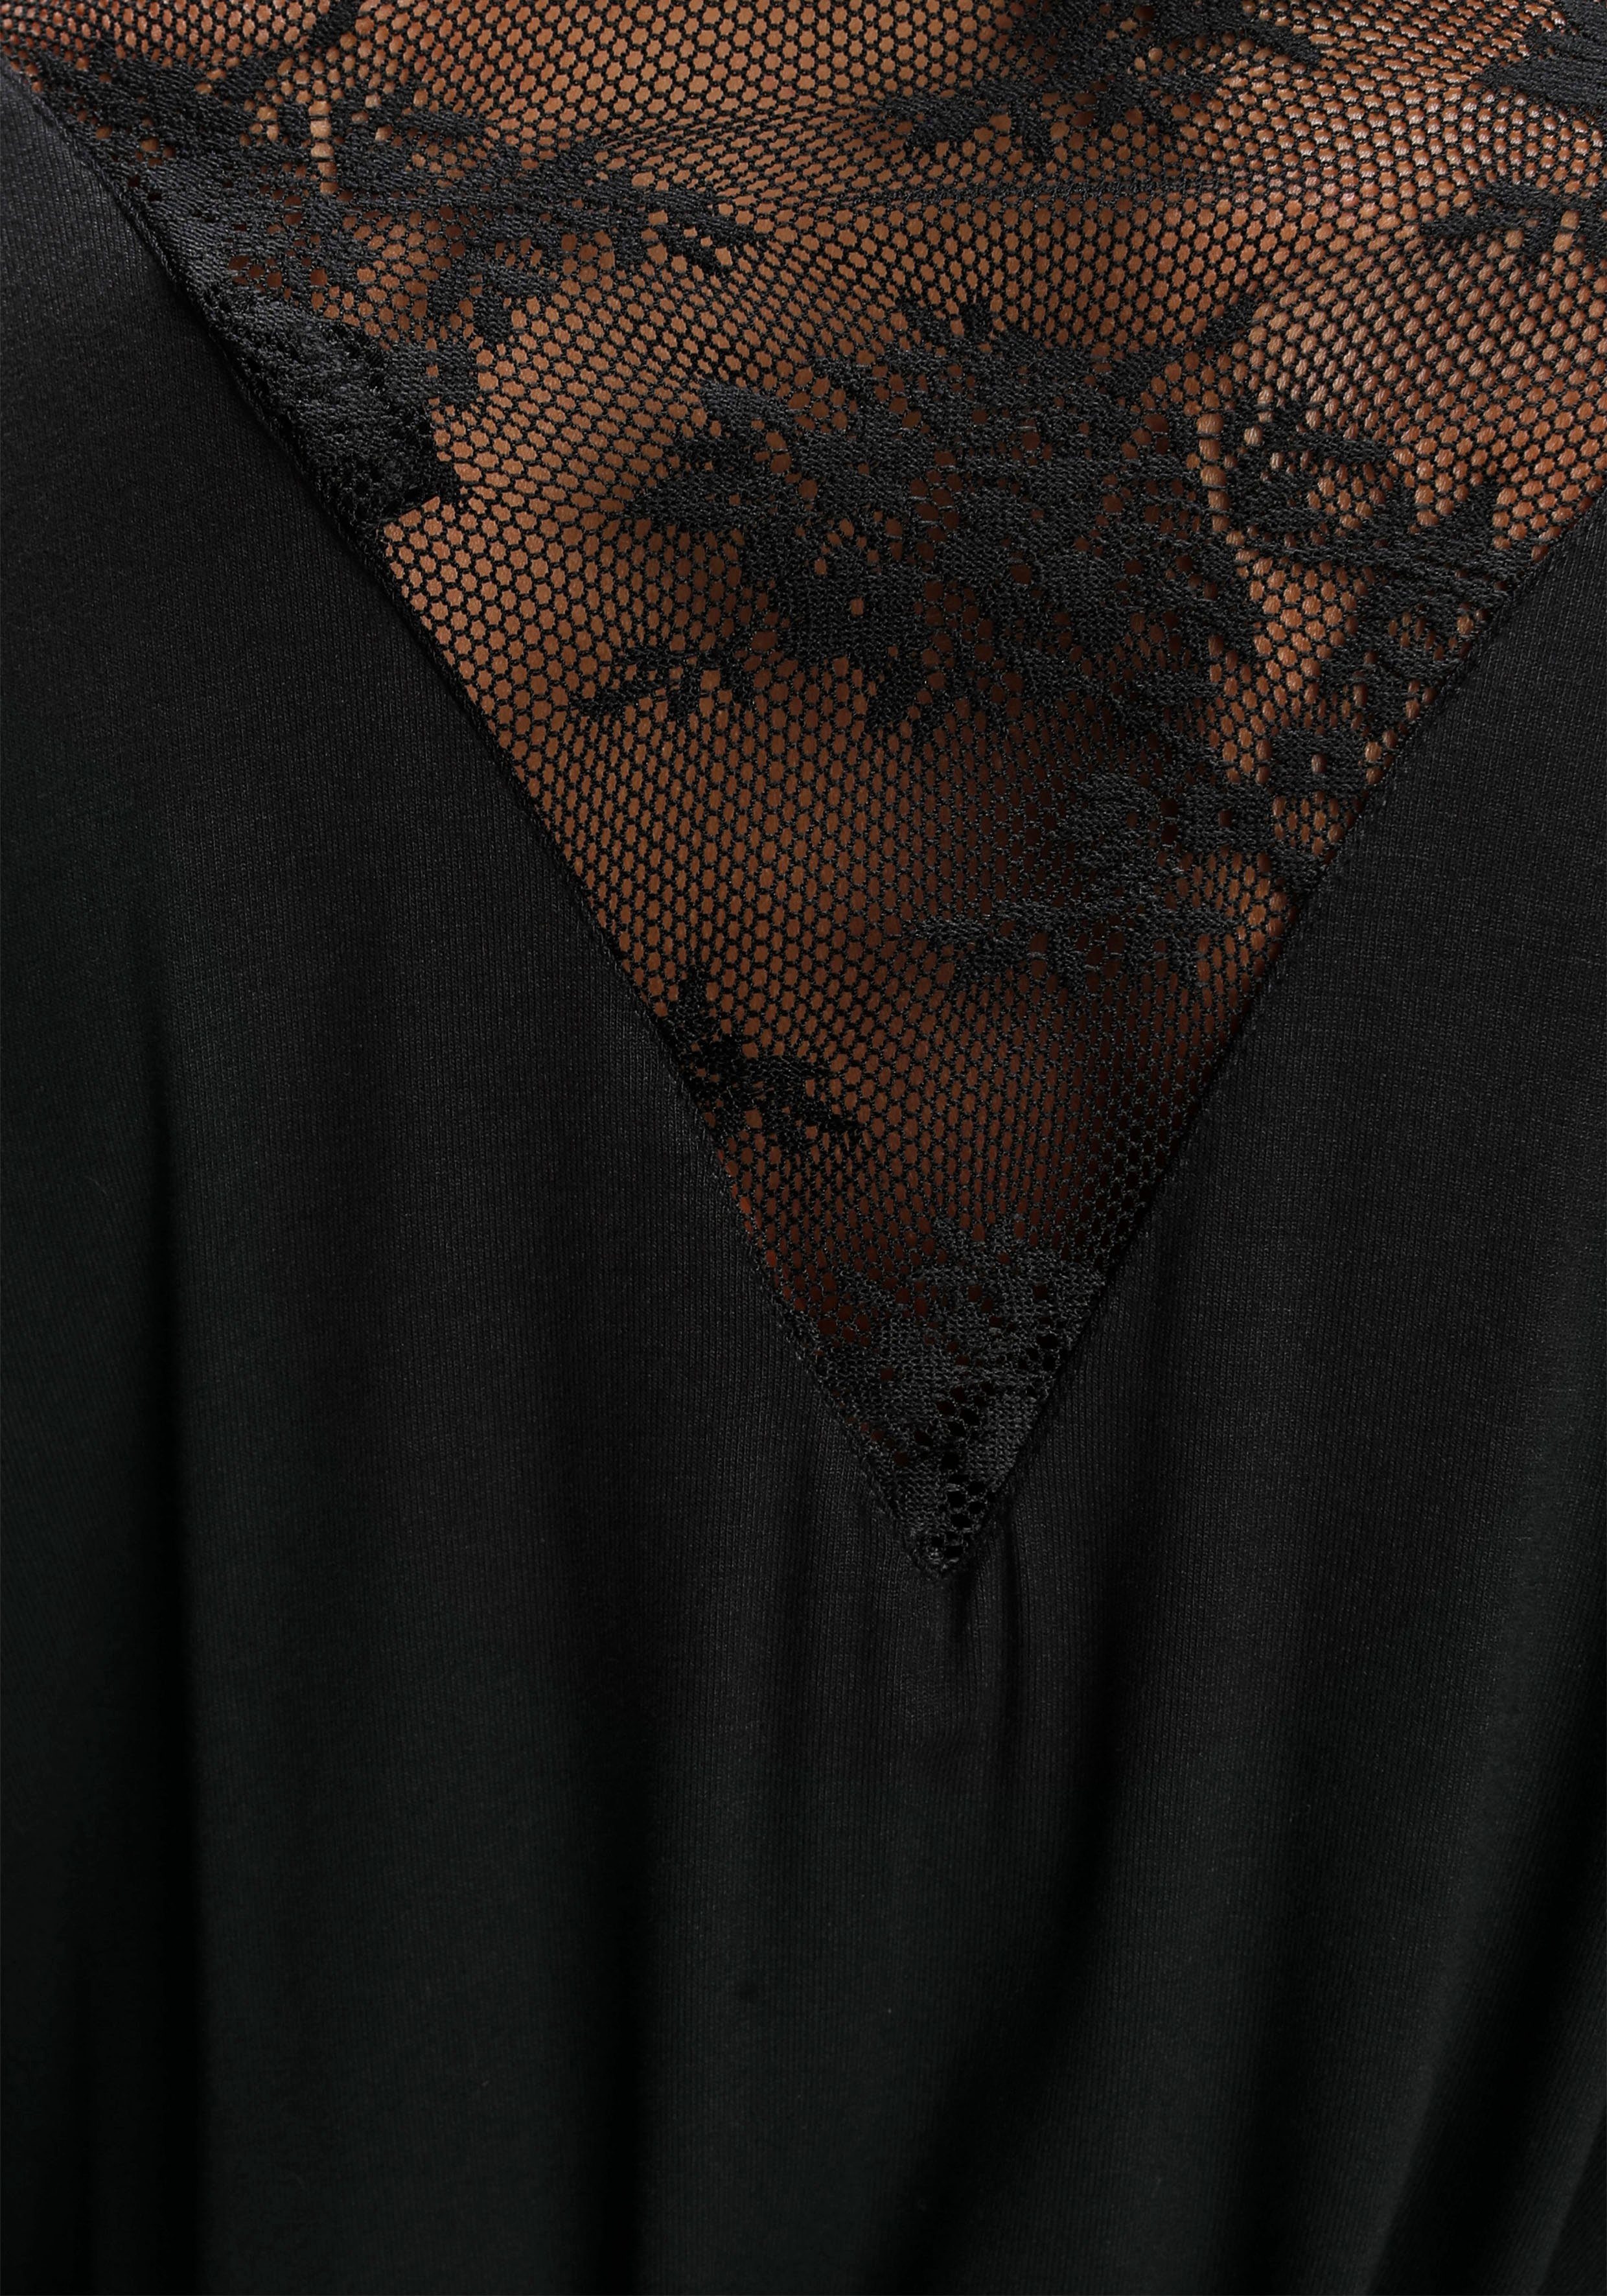 Spitzendetails Bruno Viskose, Kurzform, schwarz mit Banani Kimono, schönen